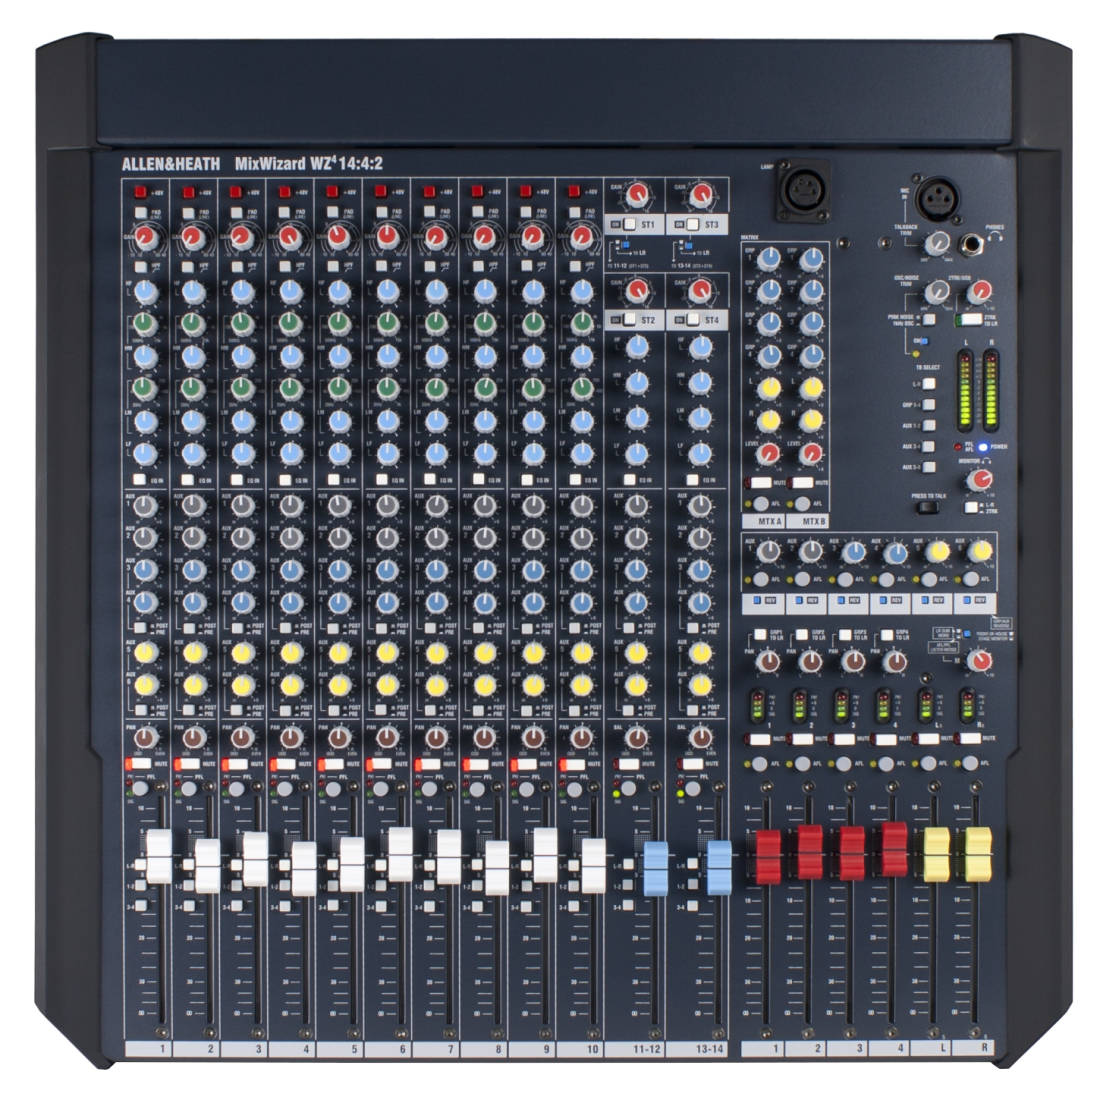 MixWizard WZ4 14:4:2 Desktop/Rack Mountable Mixer